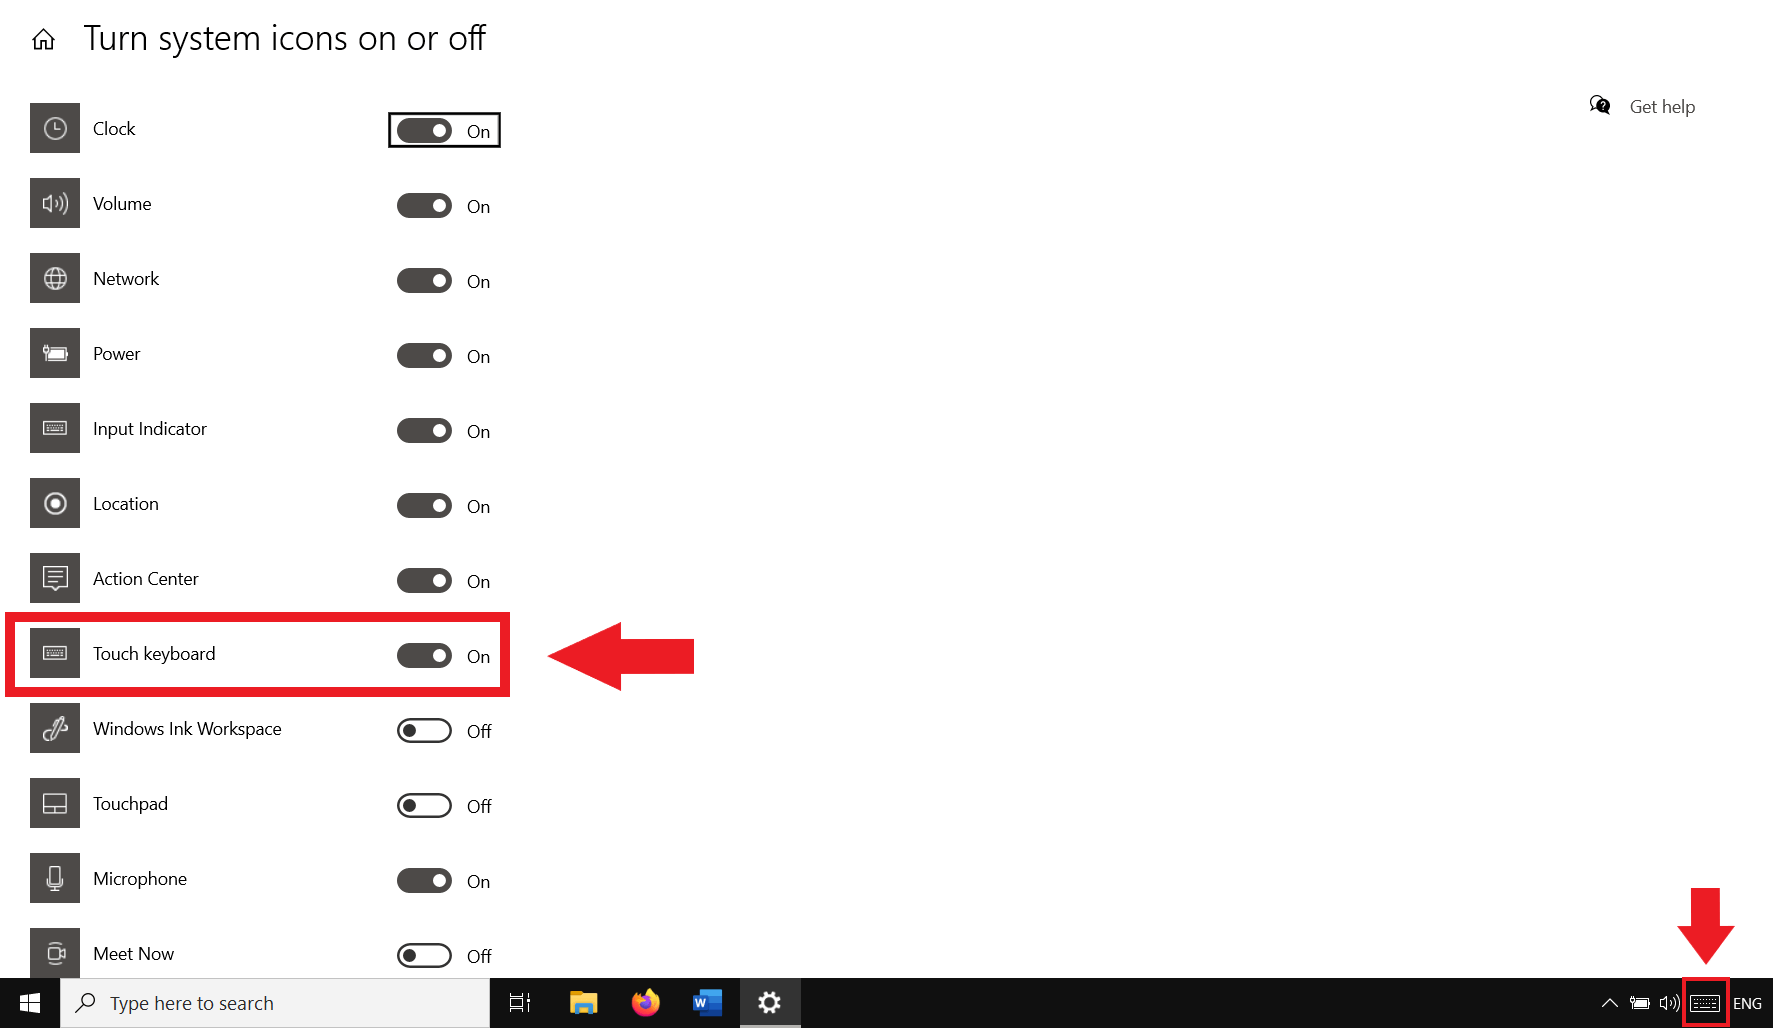 All’impostazione del cursore su “Attivato”, viene creata l’icona della tastiera virtuale nella barra delle applicazioni